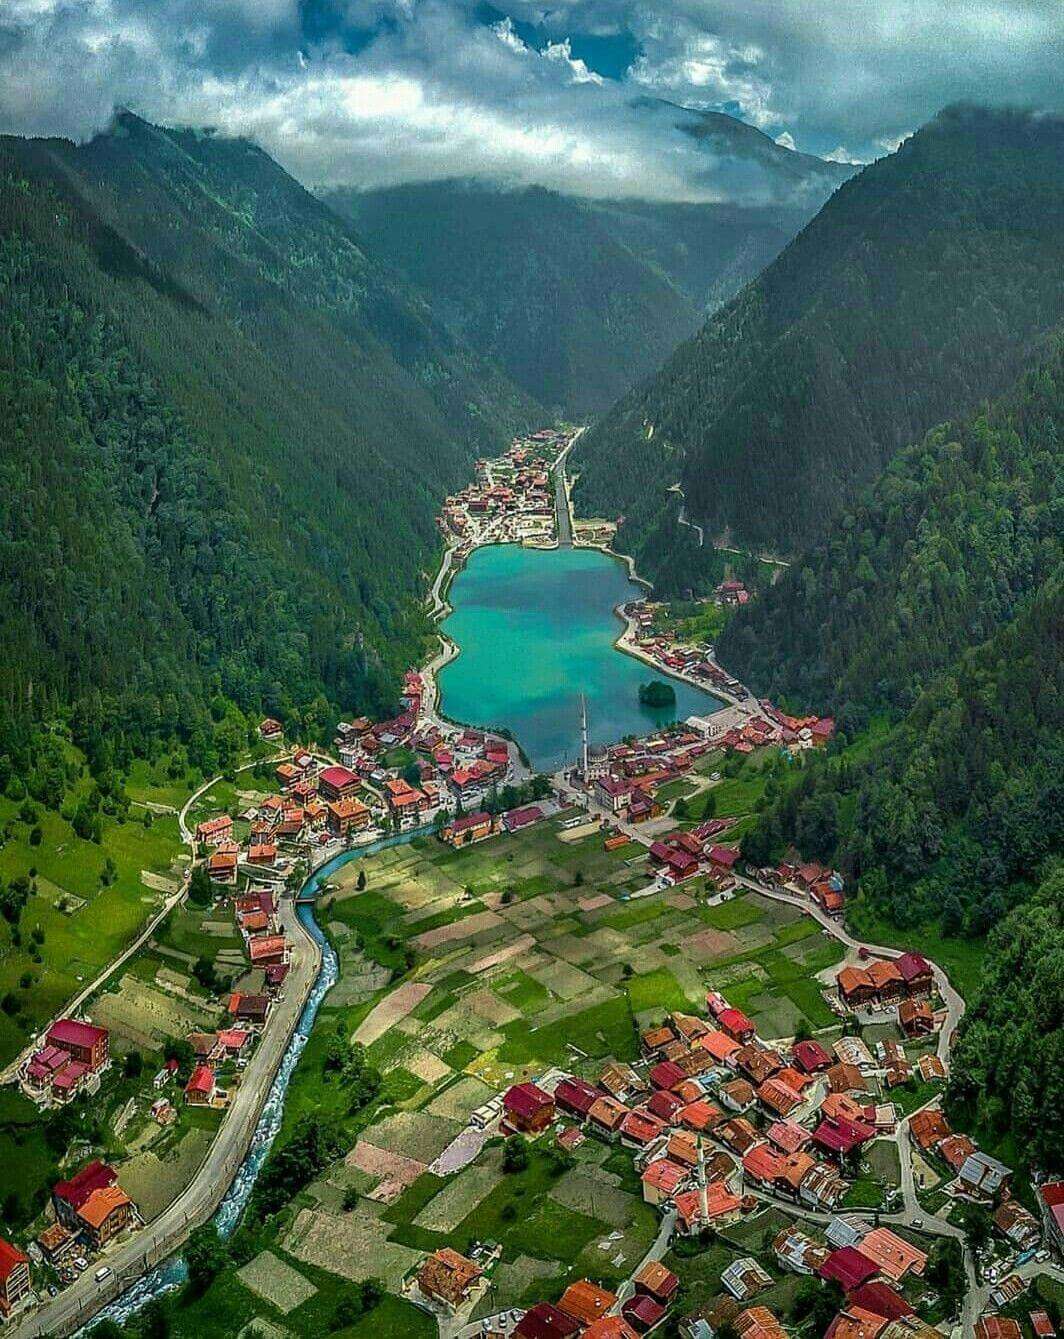 Trabzon 